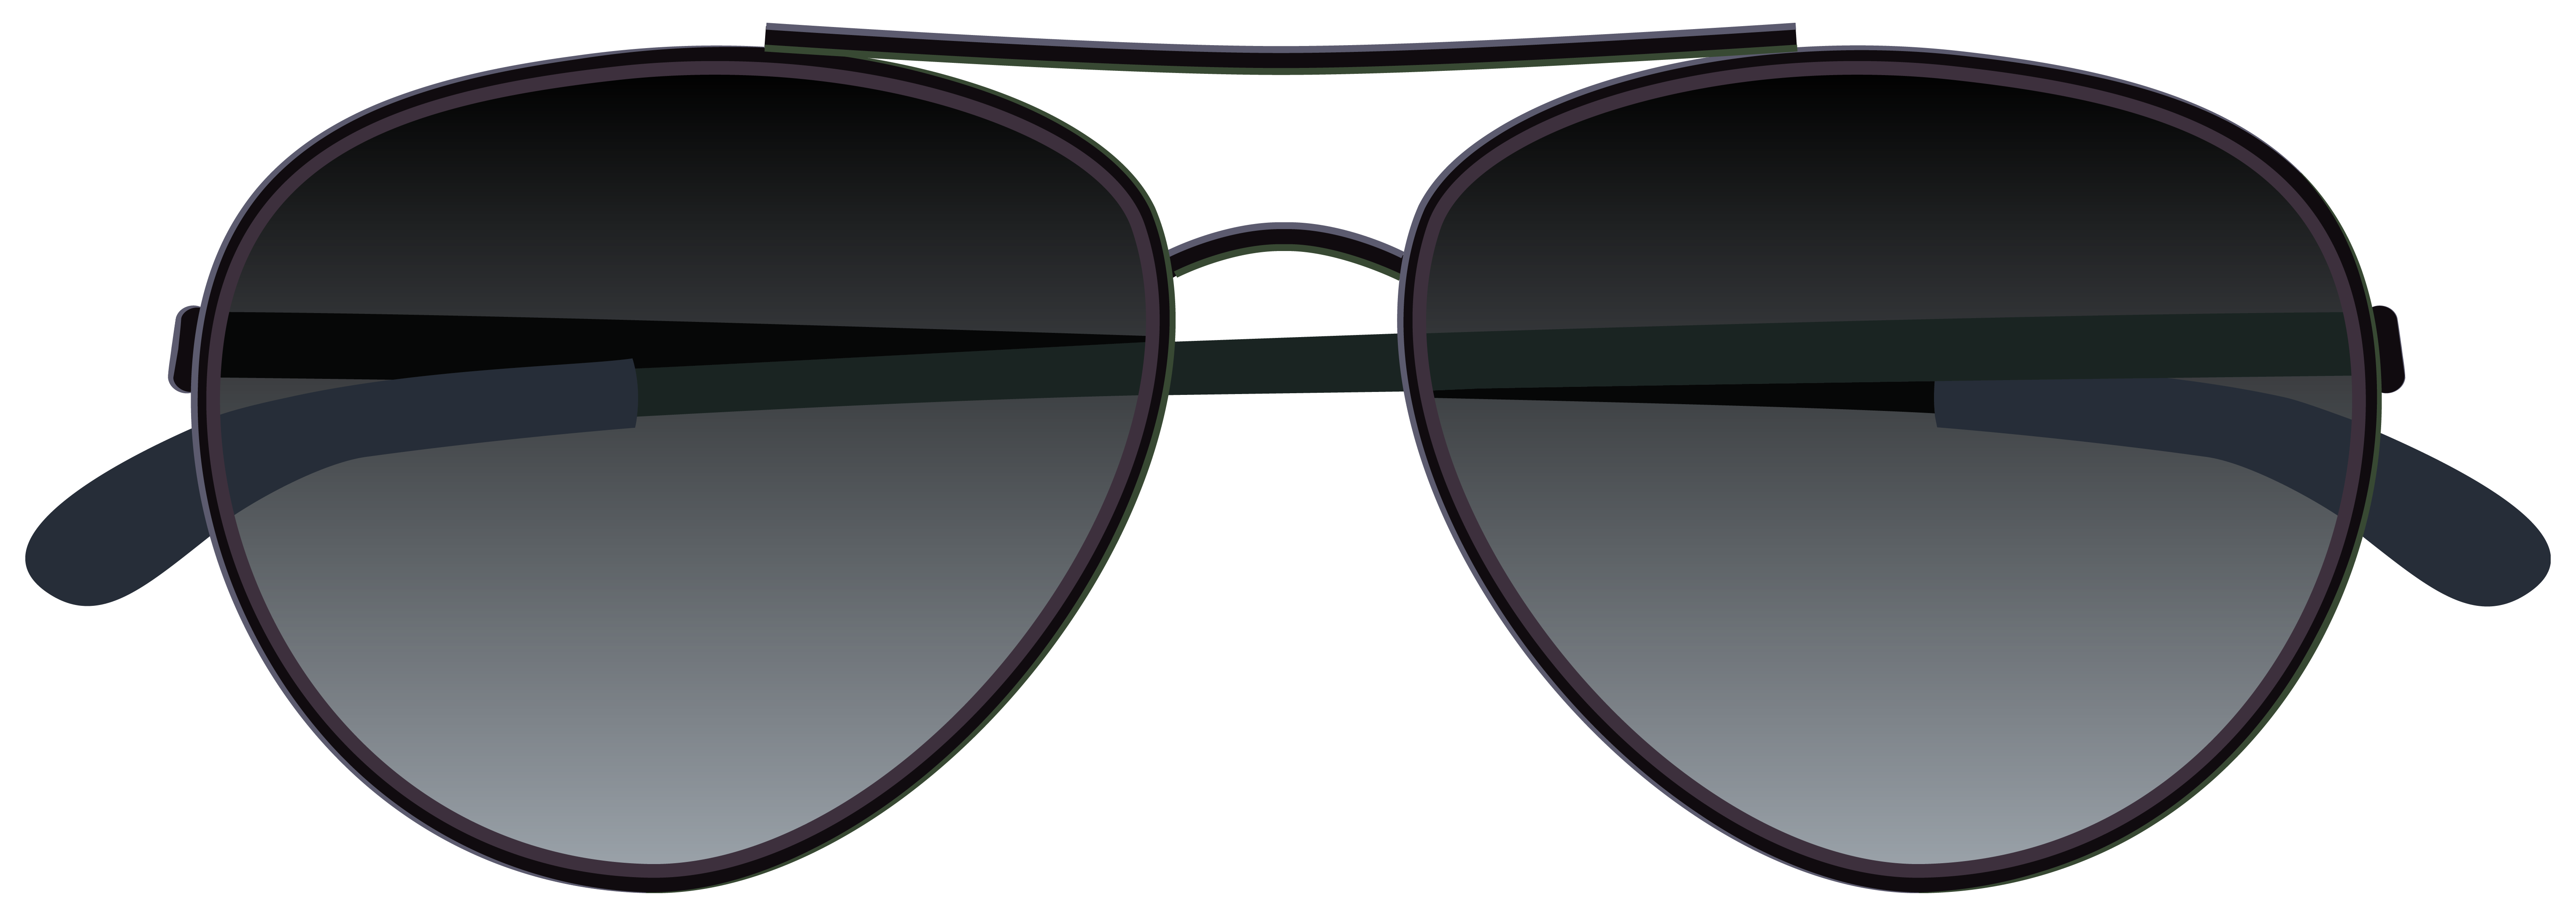 النظارات الشمسية خلفية شفافة